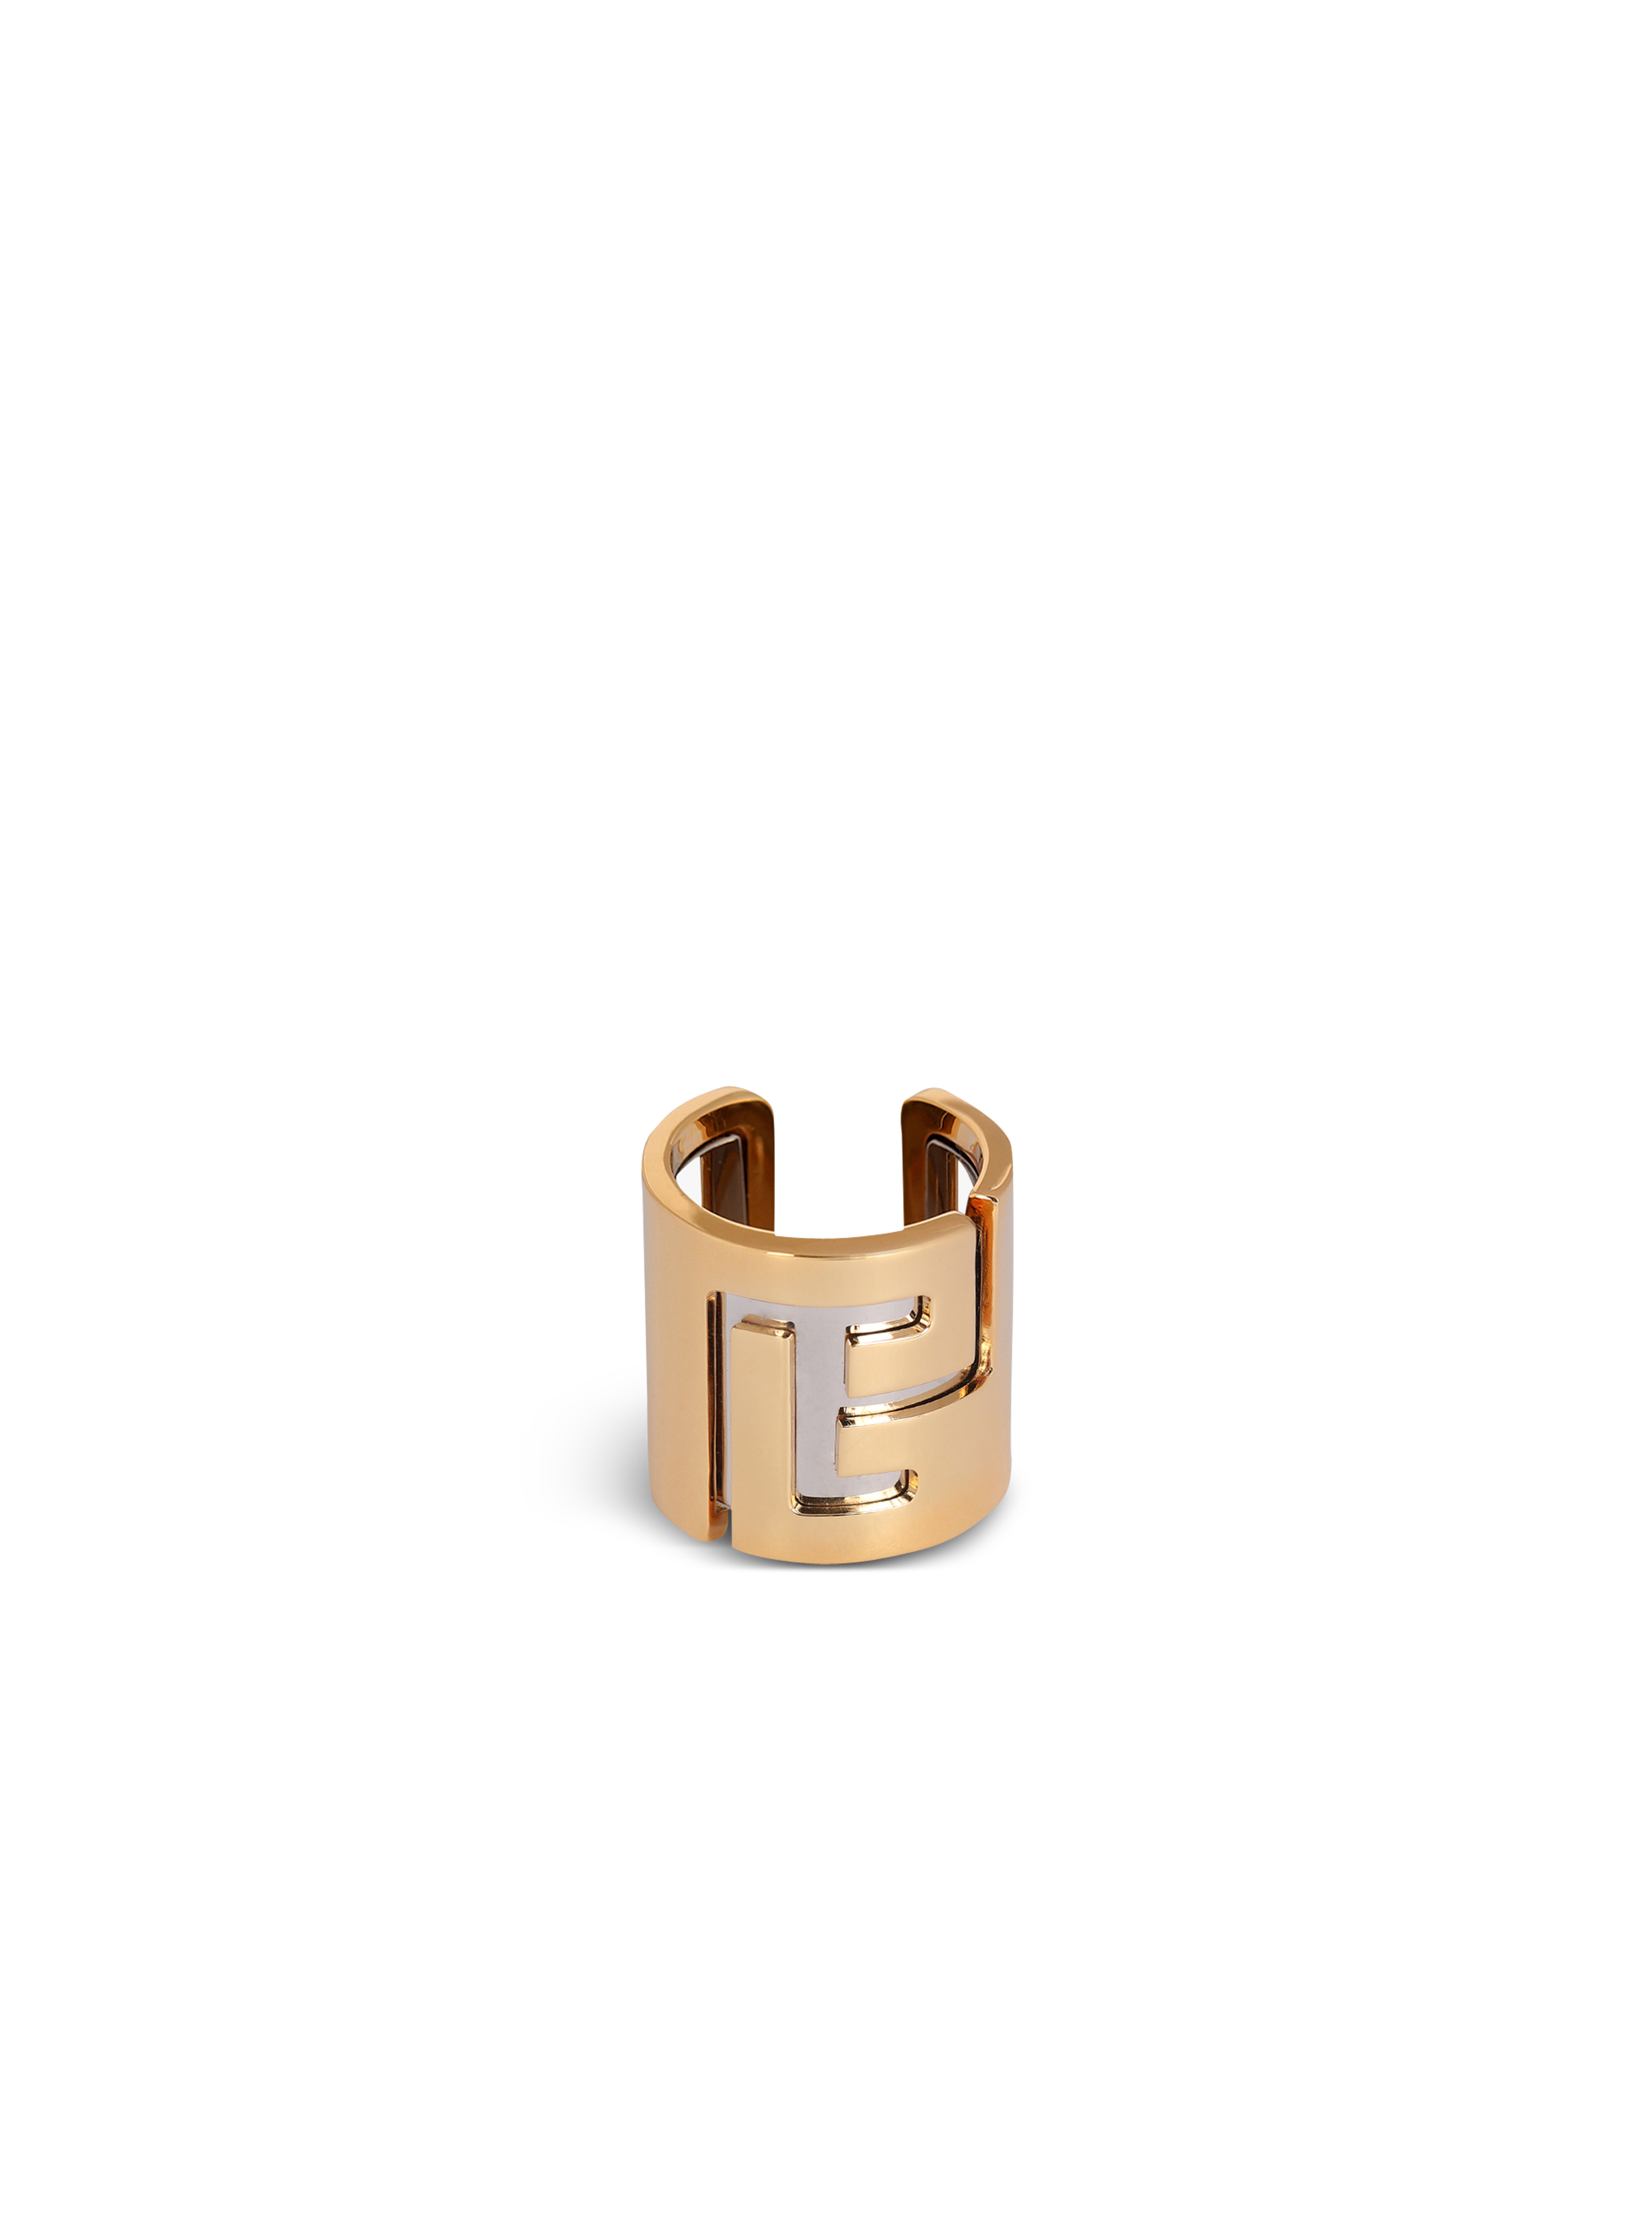 Brass ring with Balmain monogram, gold